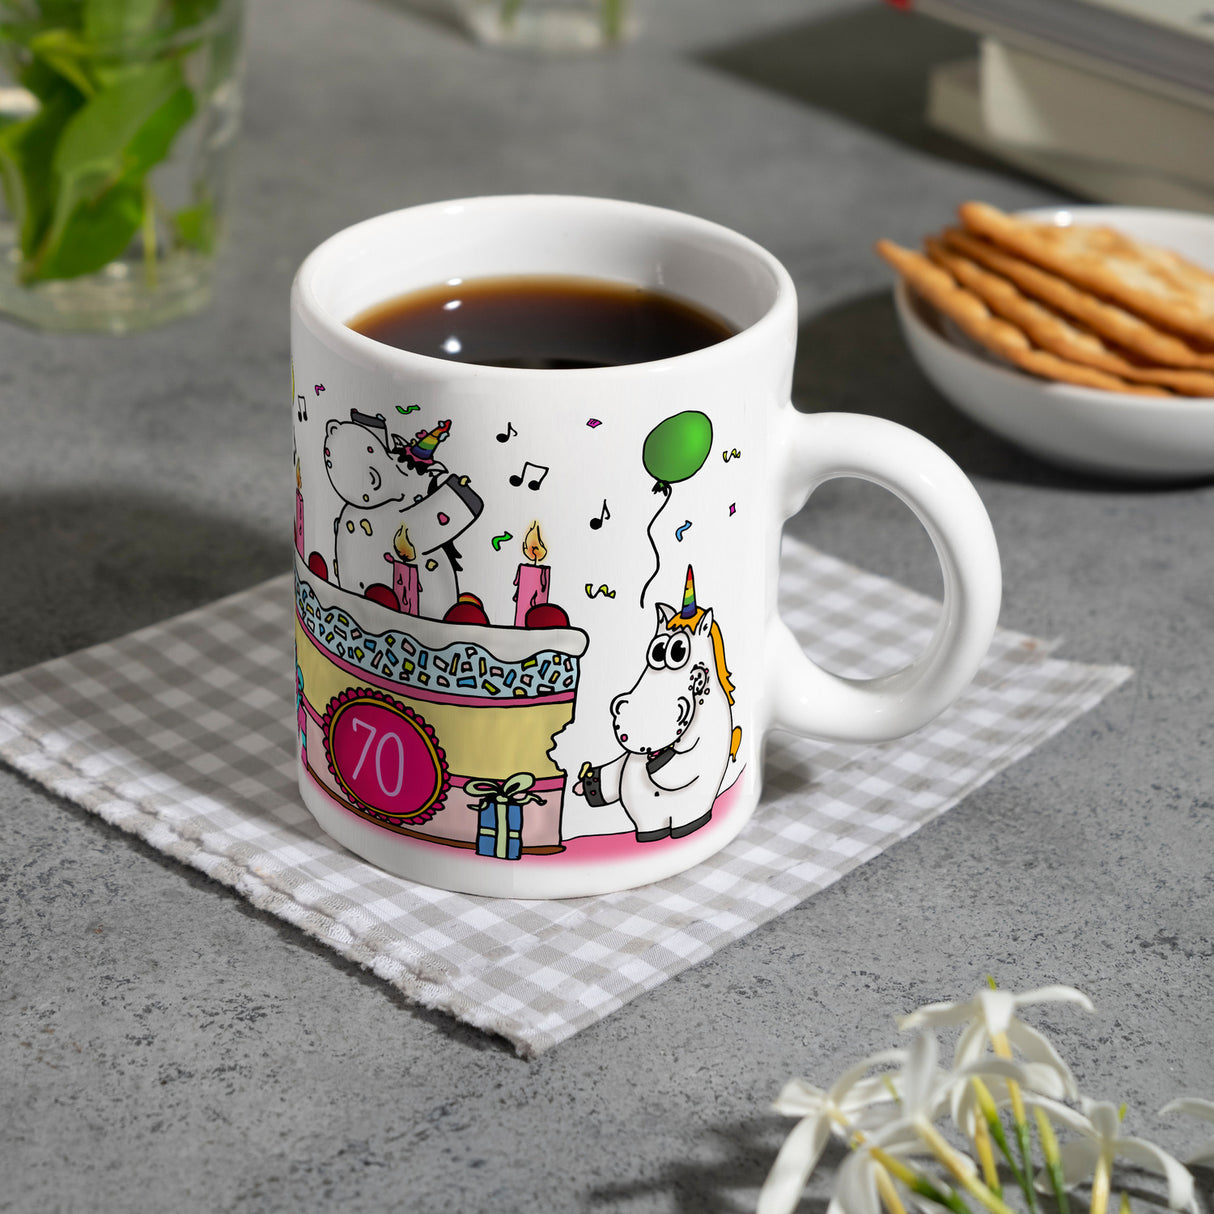 Kaffeebecher mit Einhorn Geburtstagsparty Motiv zum 70. Geburtstag